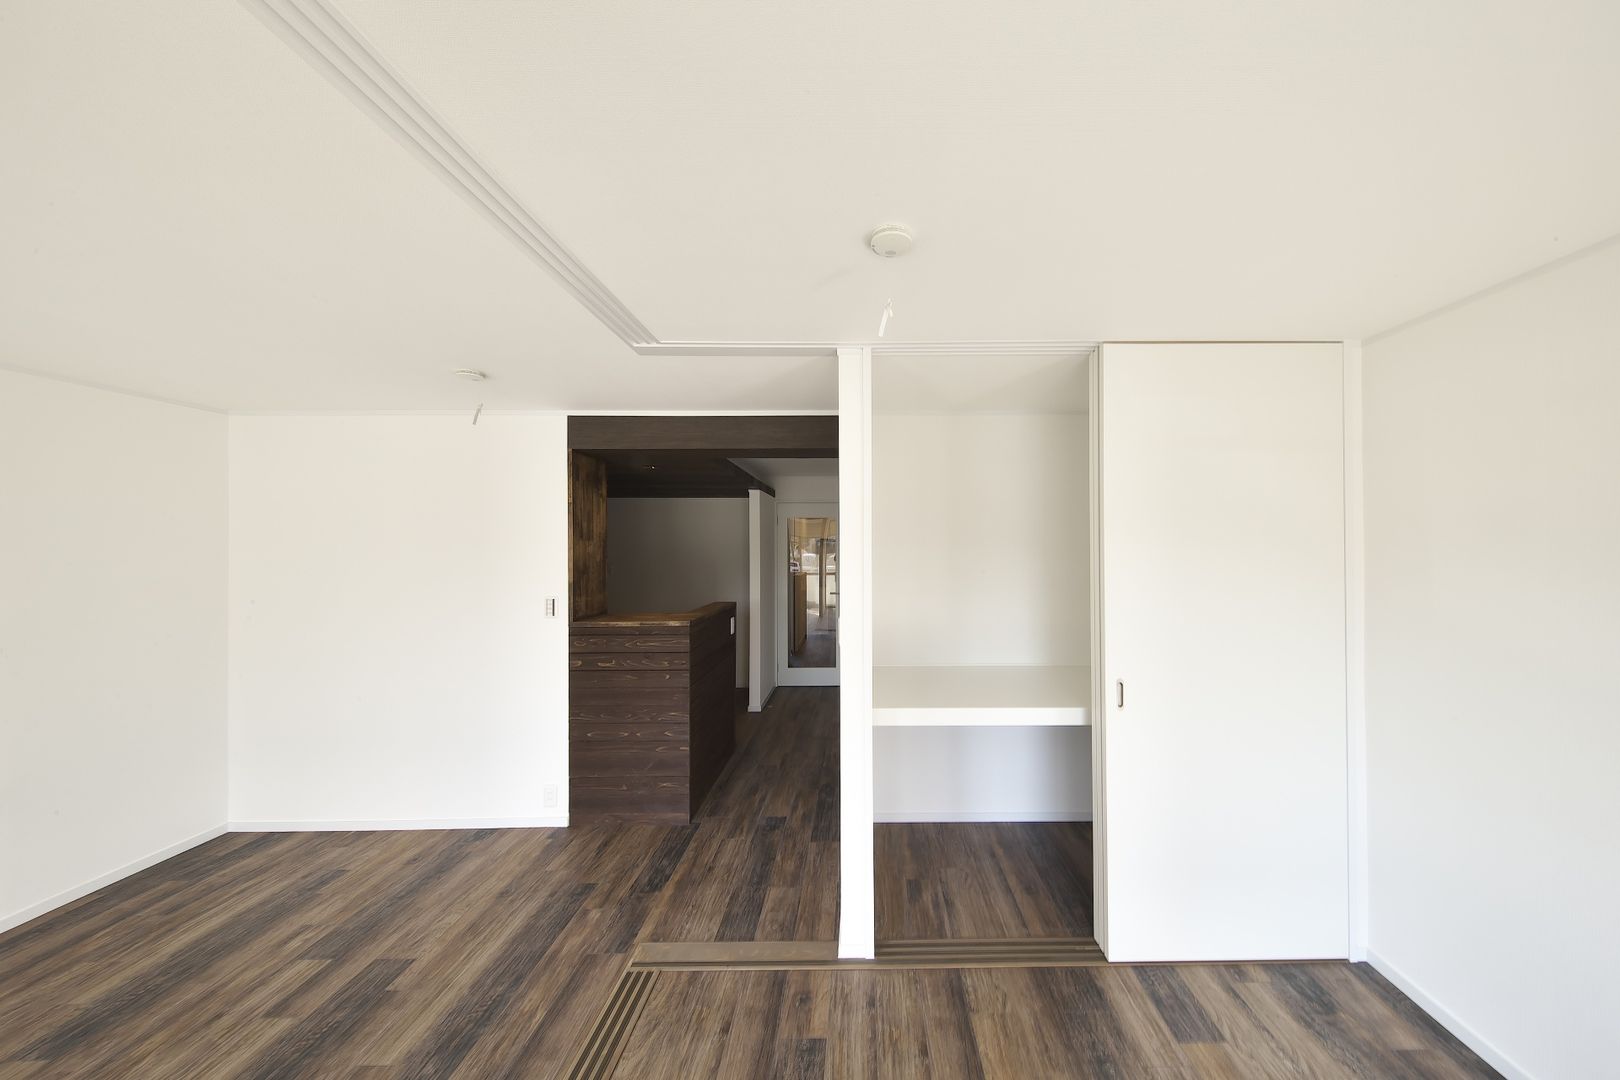 Rental apartment | renovation, FRCHIS,WORKS FRCHIS,WORKS Salas de estar ecléticas Madeira Efeito de madeira